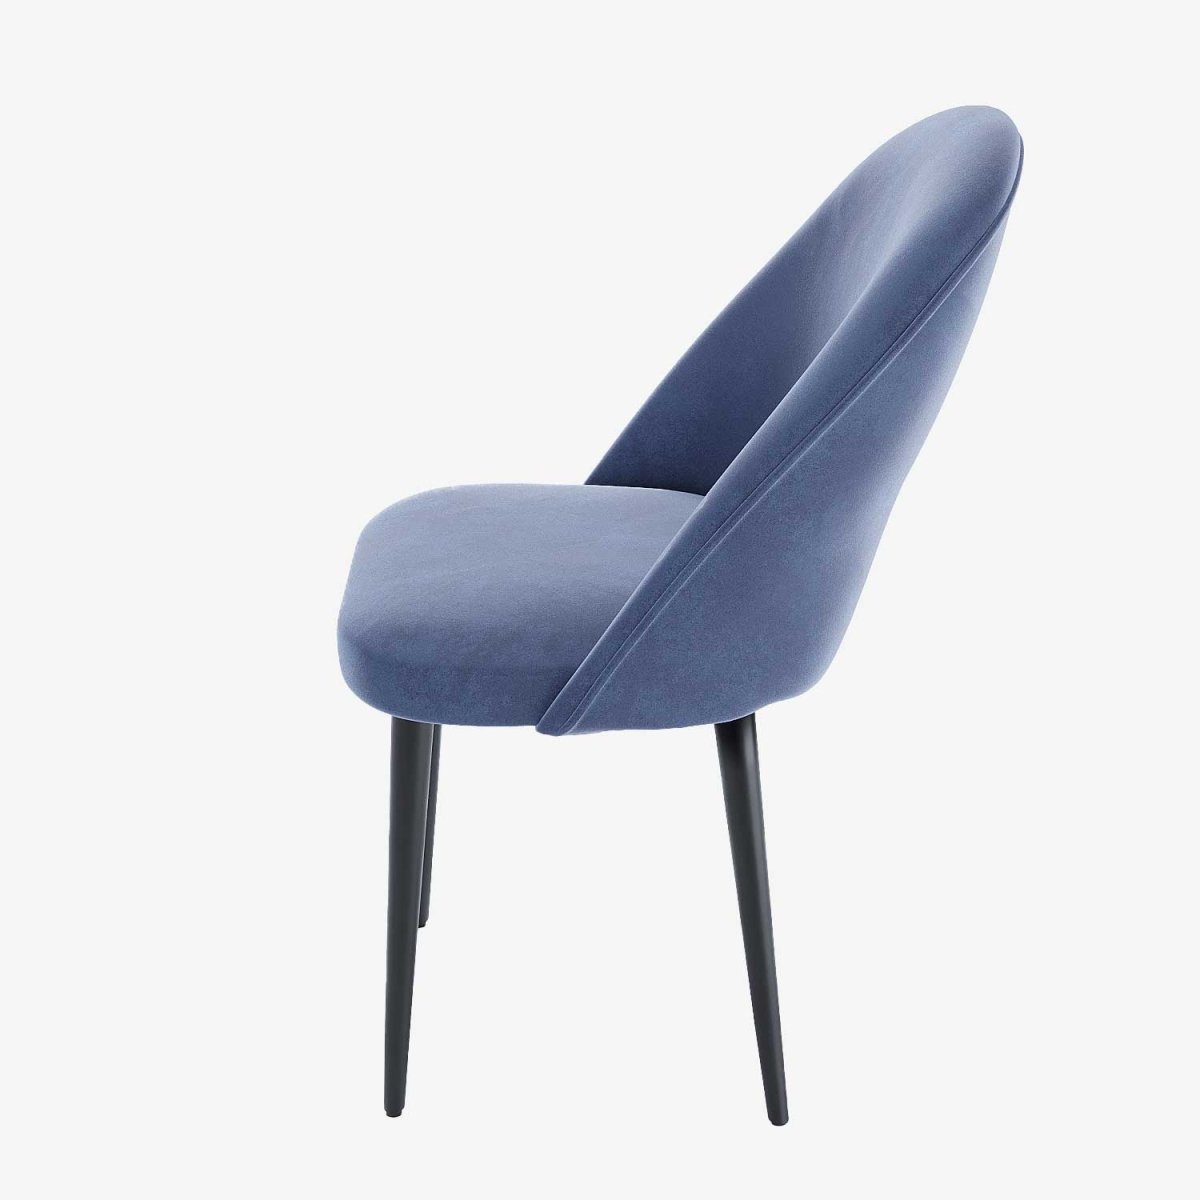 Paire de chaises design et confortables en velours bleu pieds métal noir - Potiron Paris, Potiron Paris, la déco des intérieurs hauts en couleurs